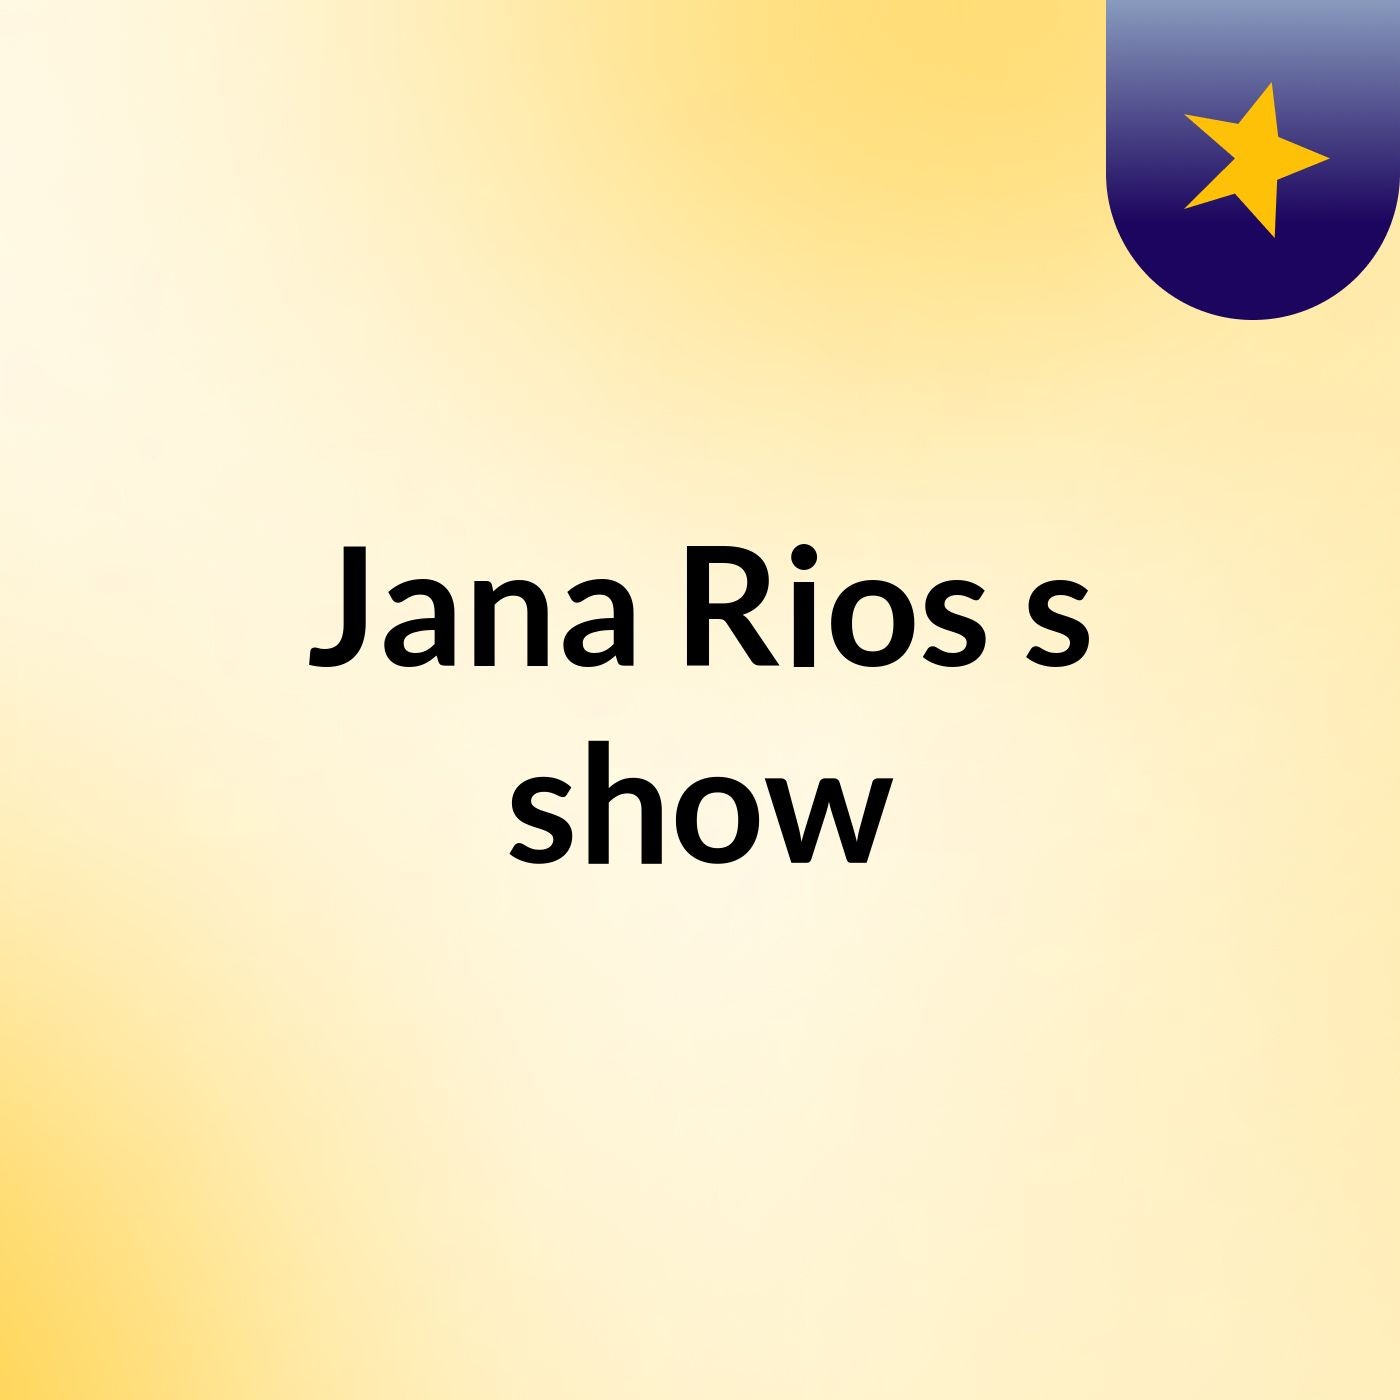 Jana Rios's show